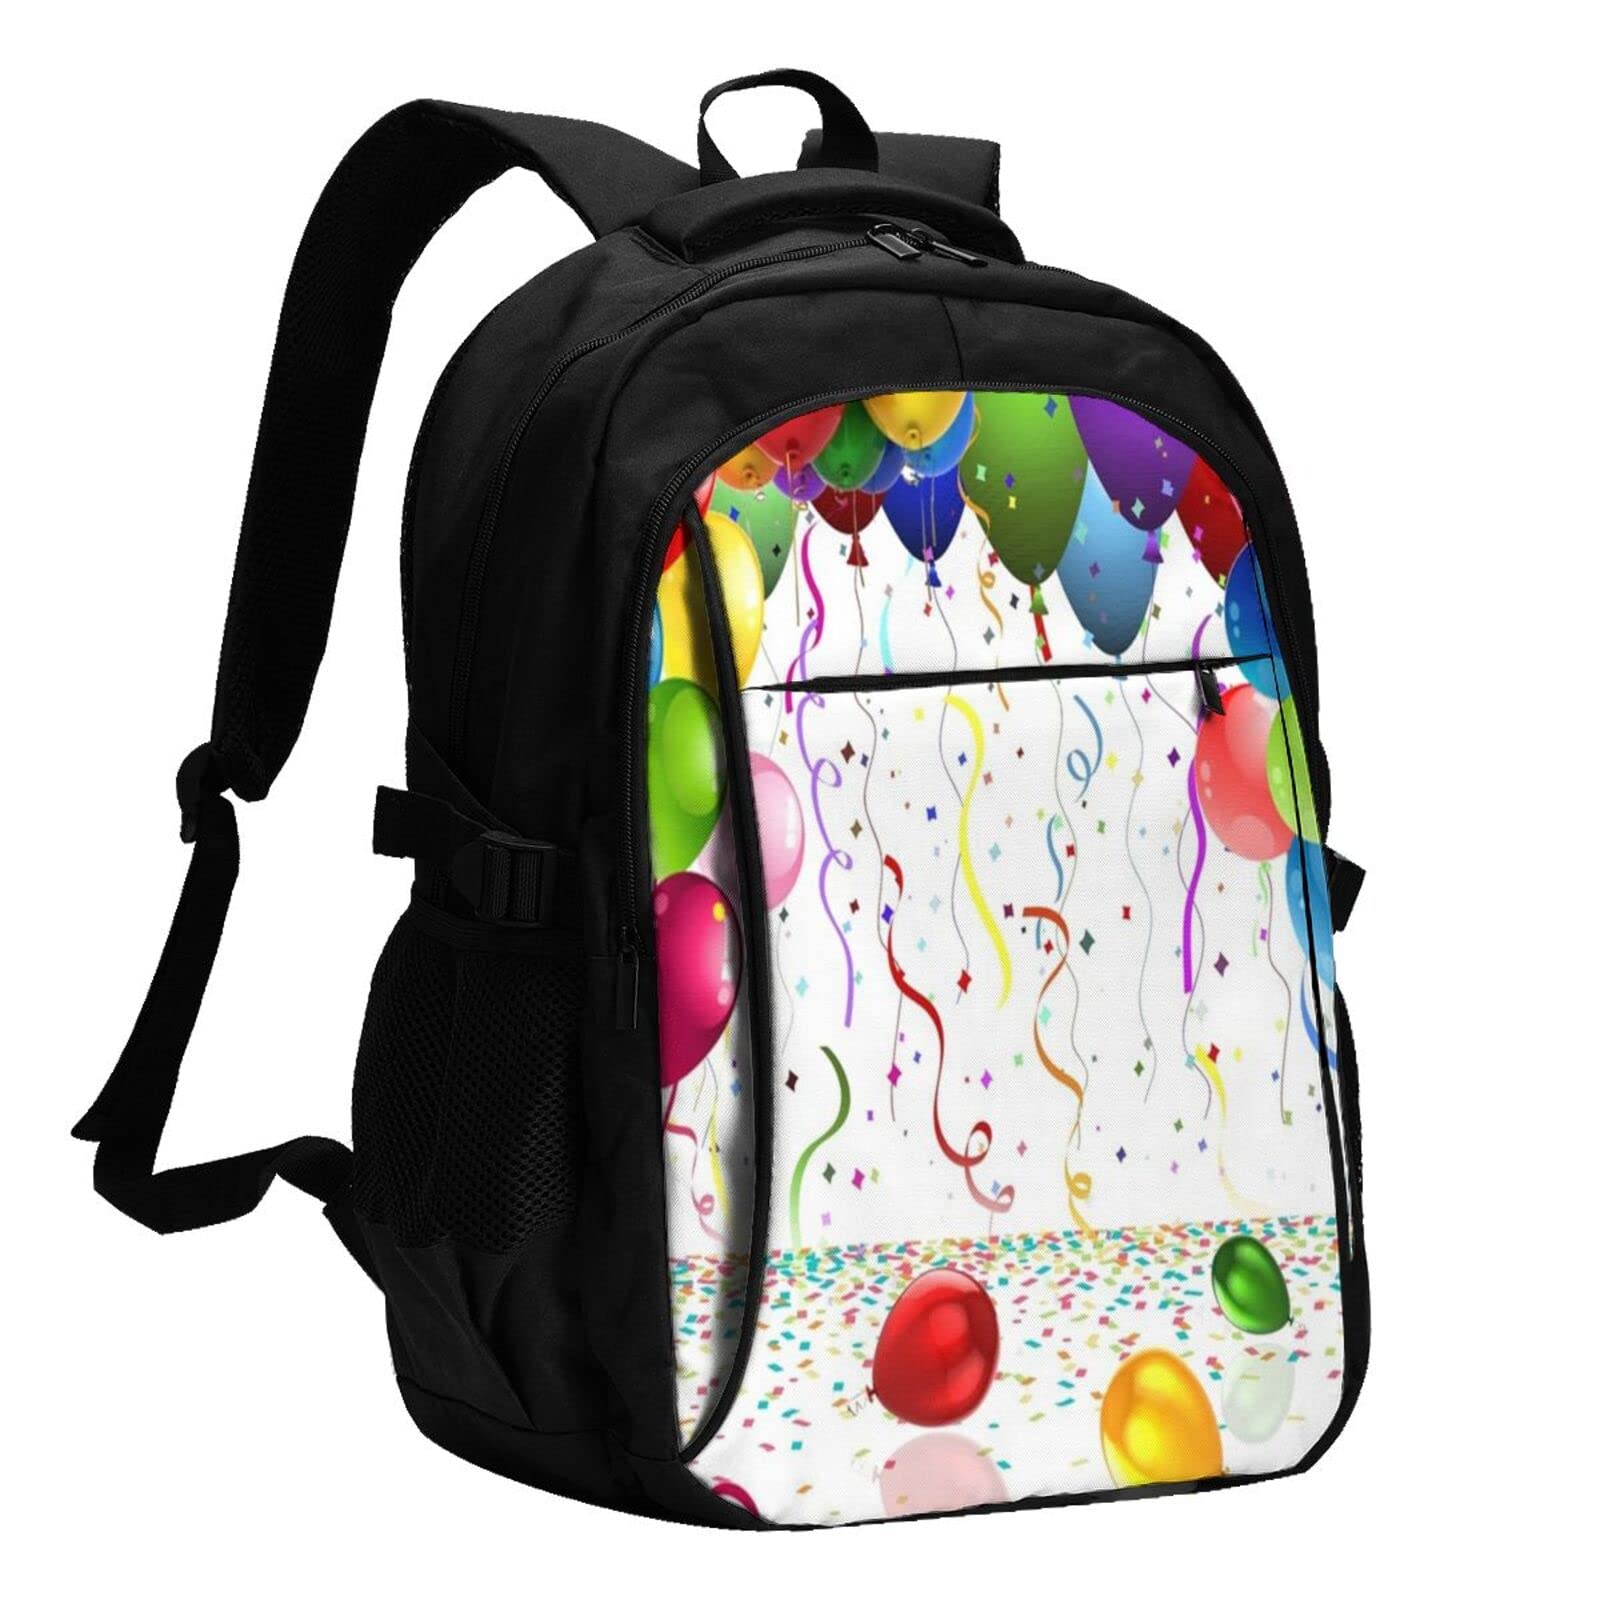 送料無料Colorful Balloons Usb Travel Laptop Backpack Water Resistant Casual Daypack Computer Bag Business並行輸入品